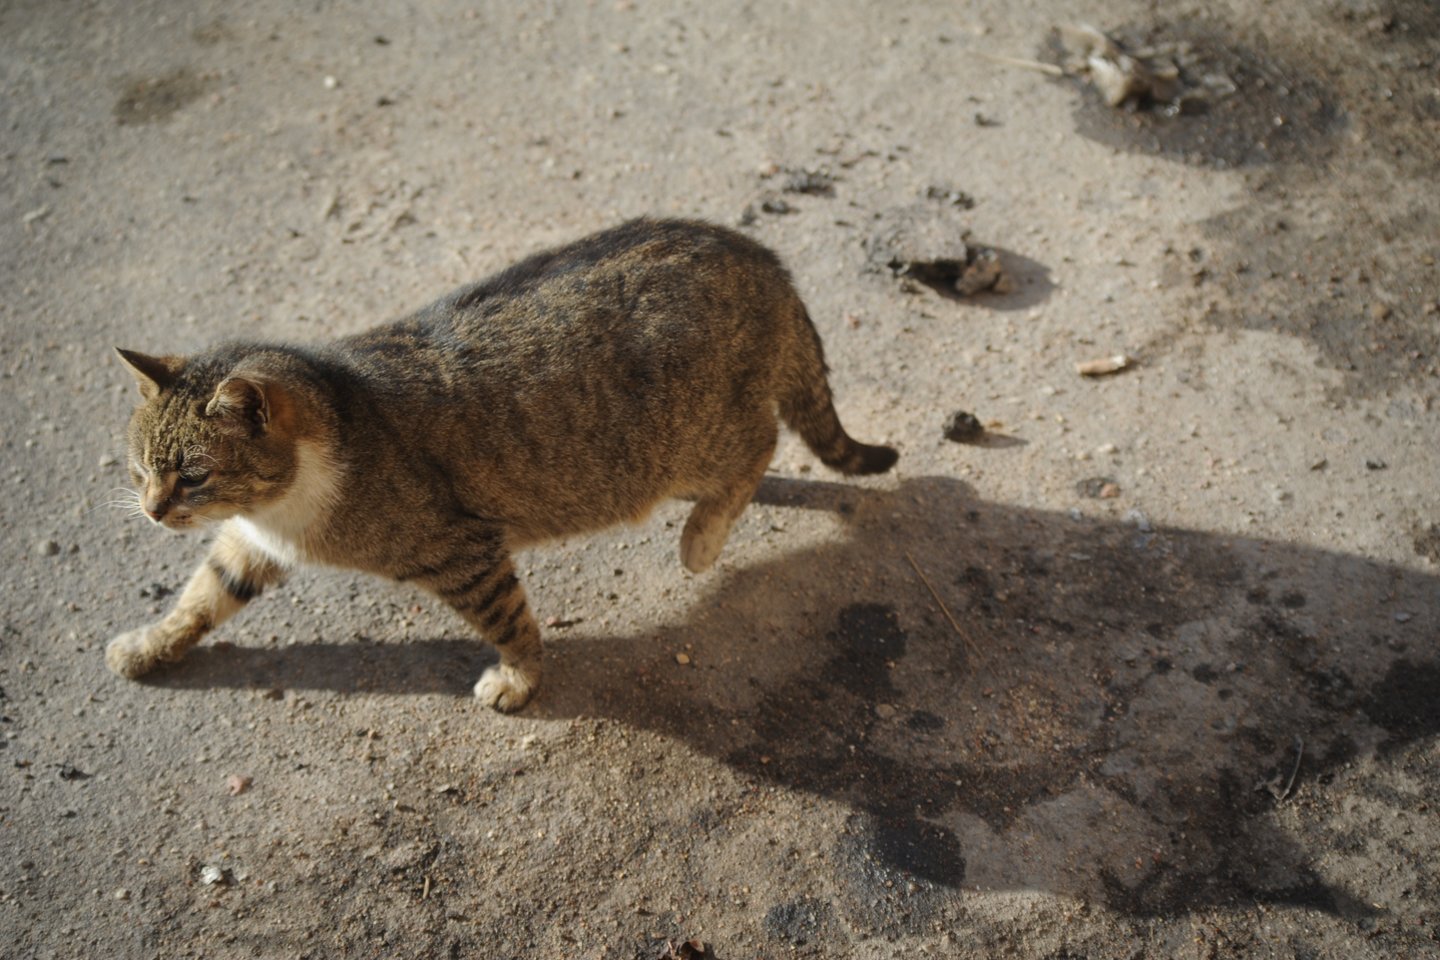 PSP programos metu benamės katės pagaunamos, jeigu yra sveikos – sterilizuojamos arba kastruojamos, o po 2-3 dienų paleidžiamos ten, kur buvo sugautos.<br>D.Umbraso nuotr.